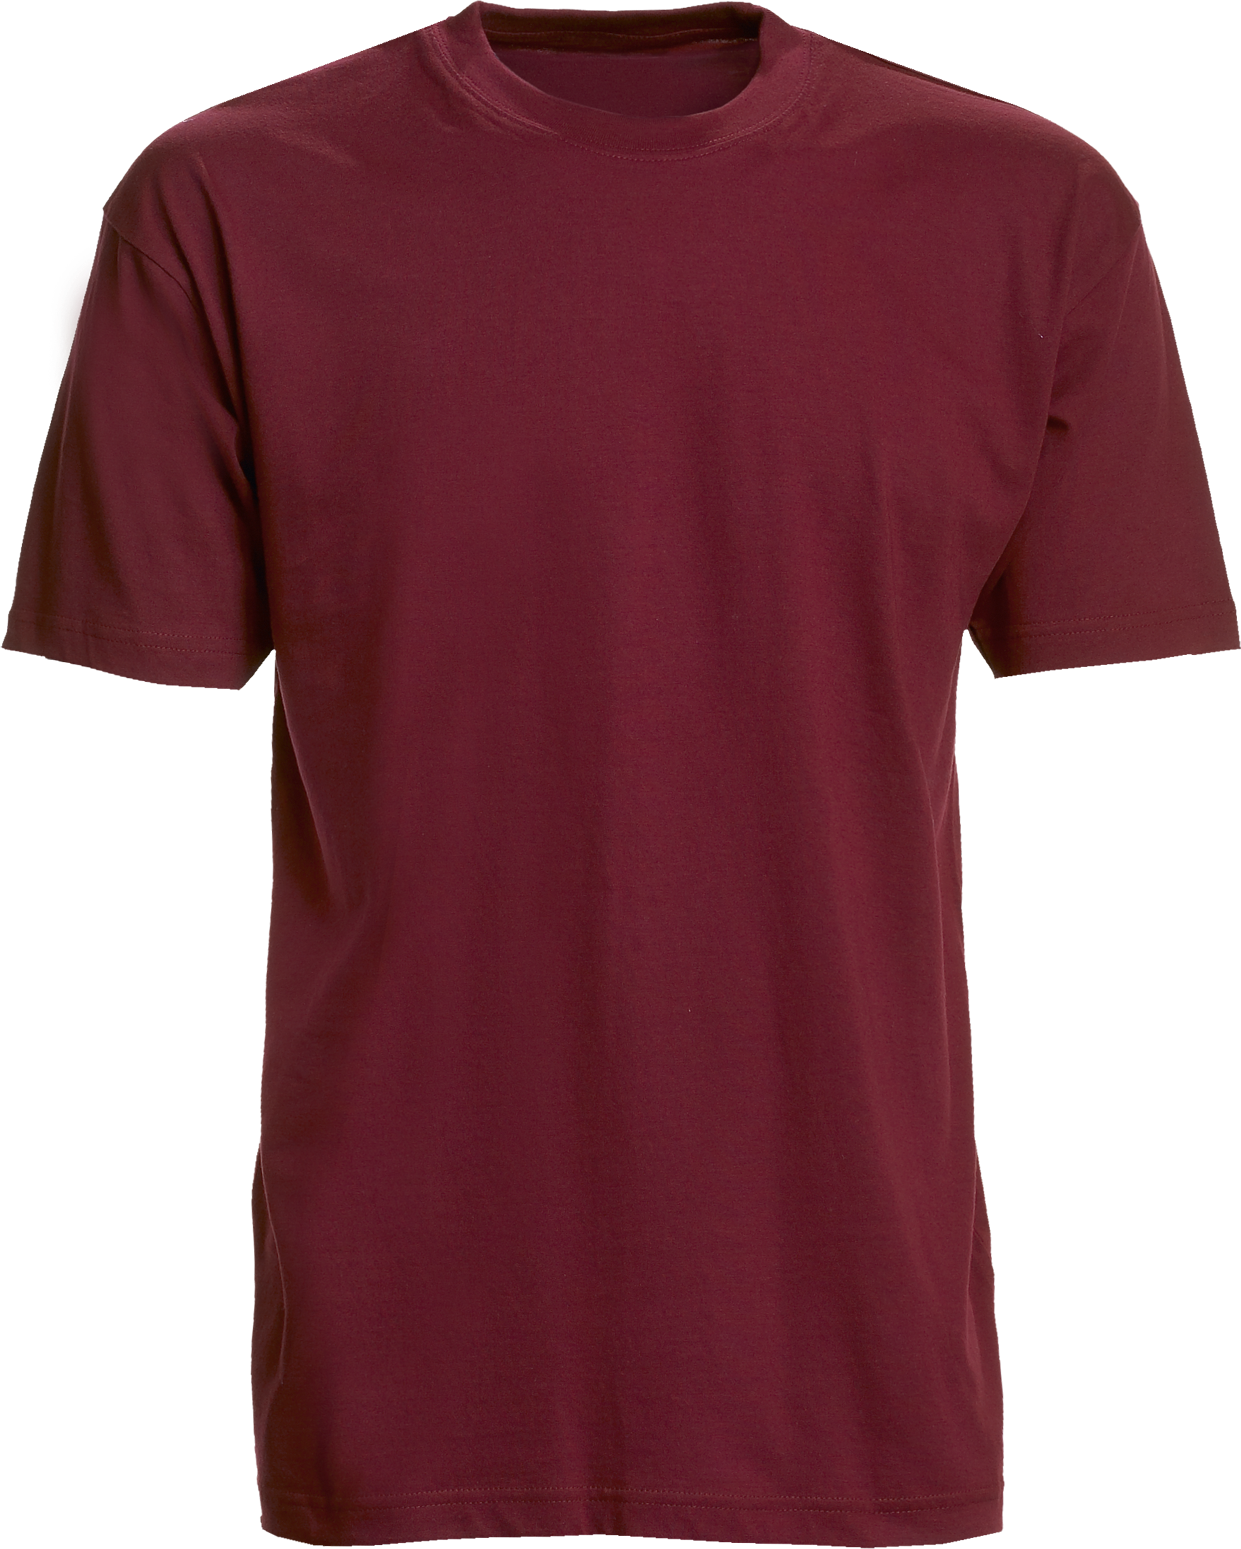 Bordeaux Herren T-Shirt, Basic (8150101)